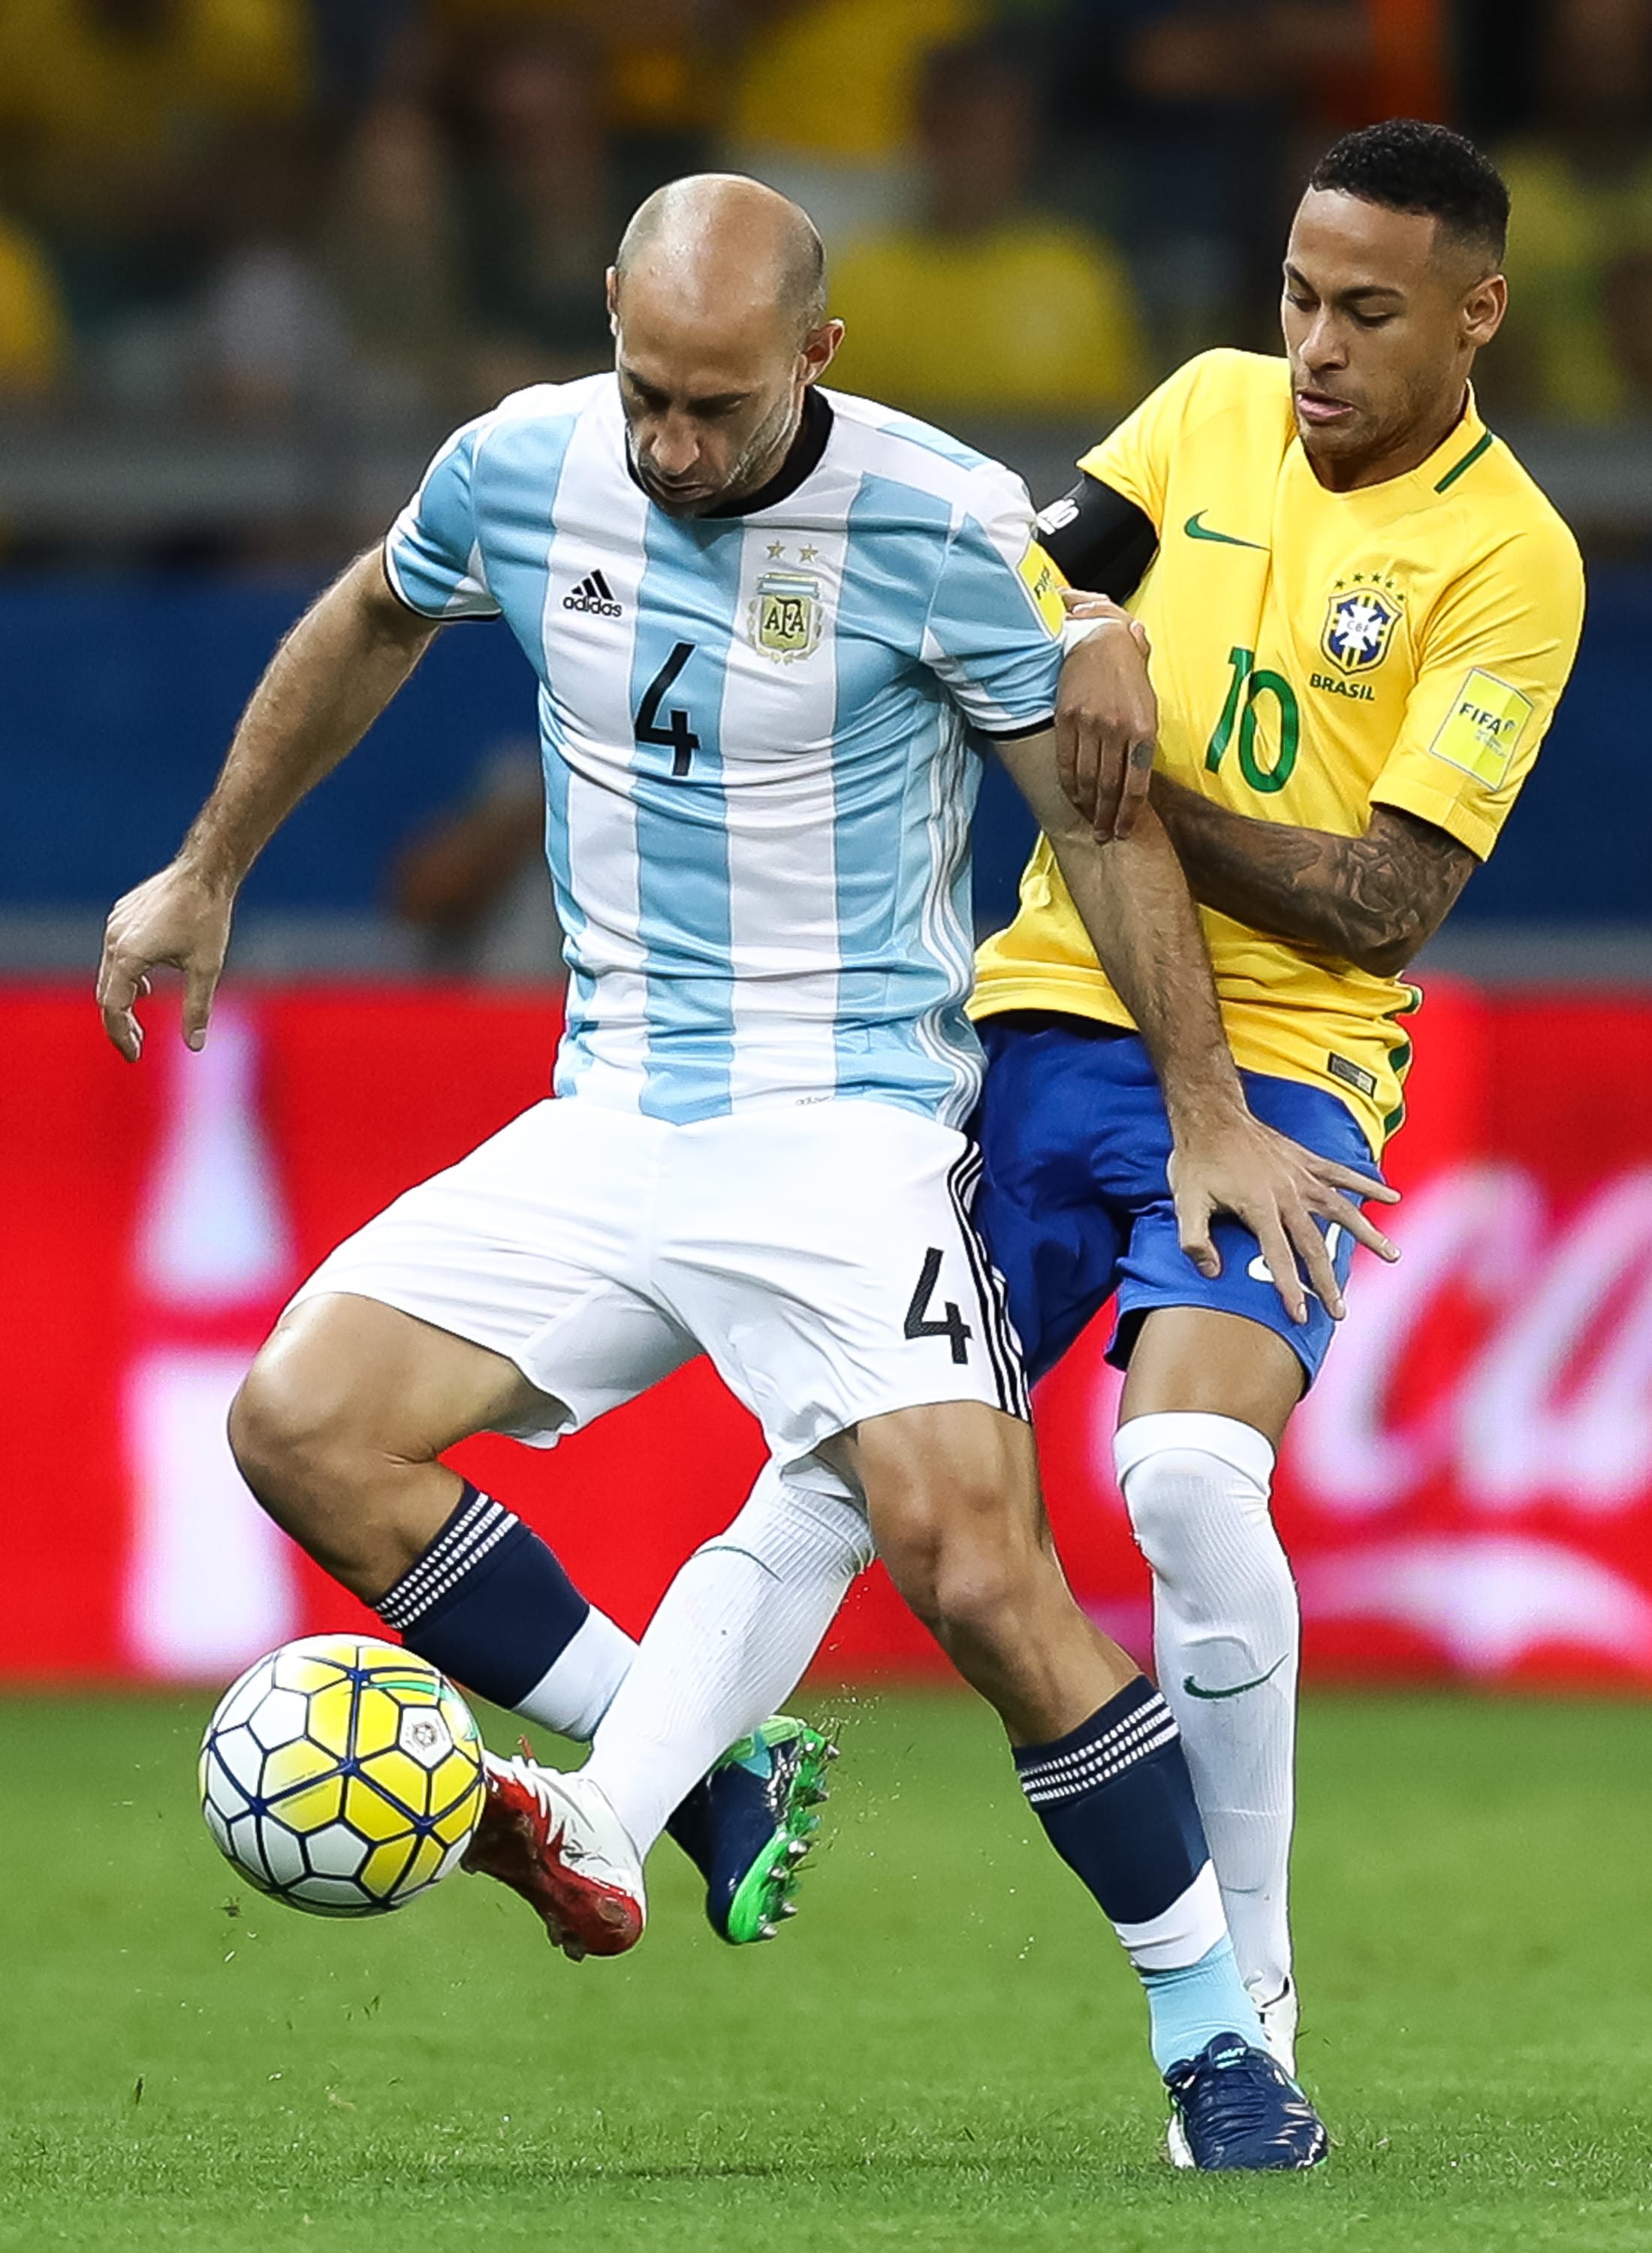 שחקן נבחרת ארגנטינה פאבלו סבאלטה מול שחקן נבחרת ברזיל ניימאר